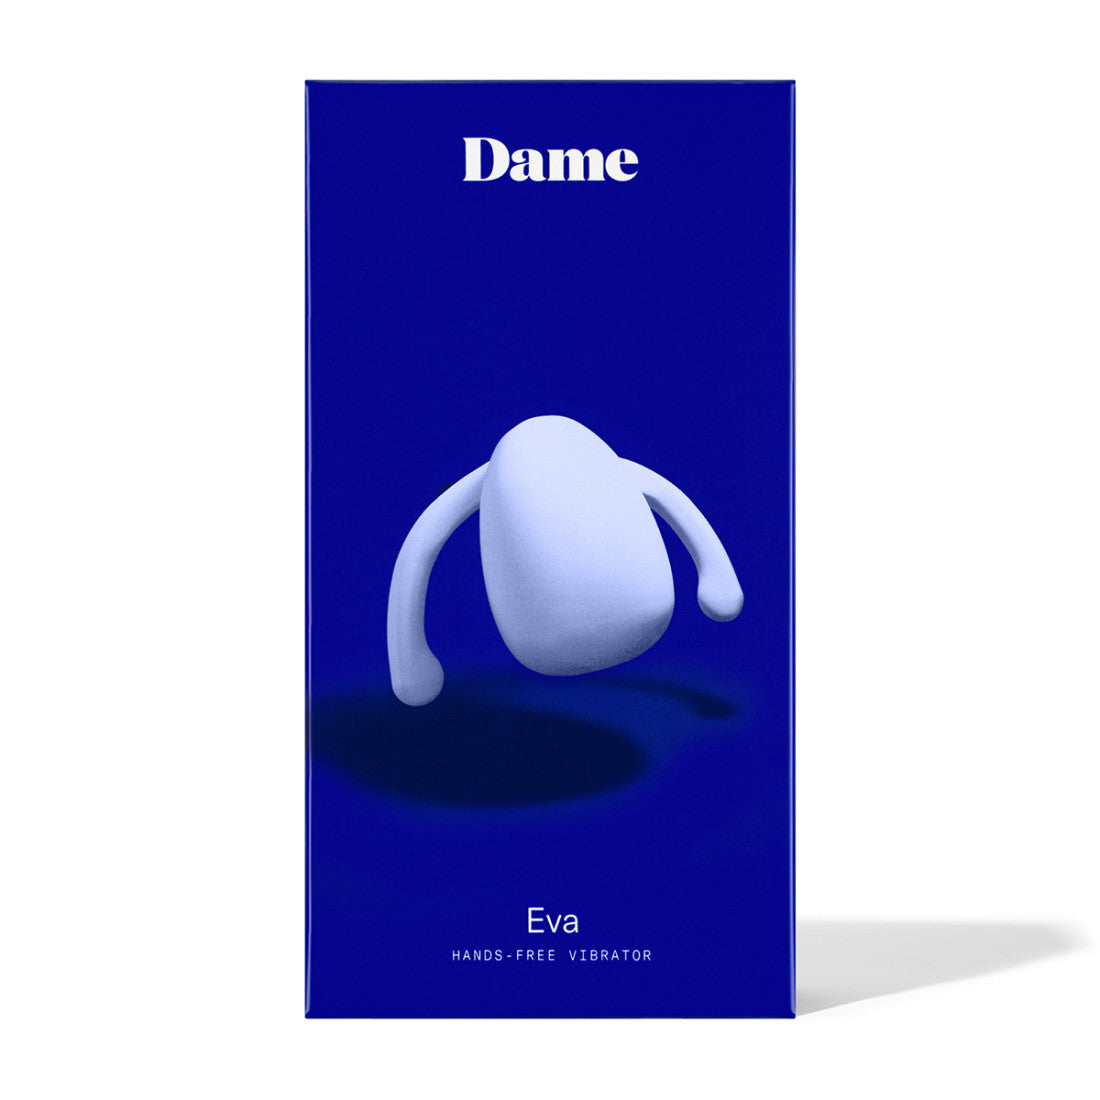 Eva II by Dame